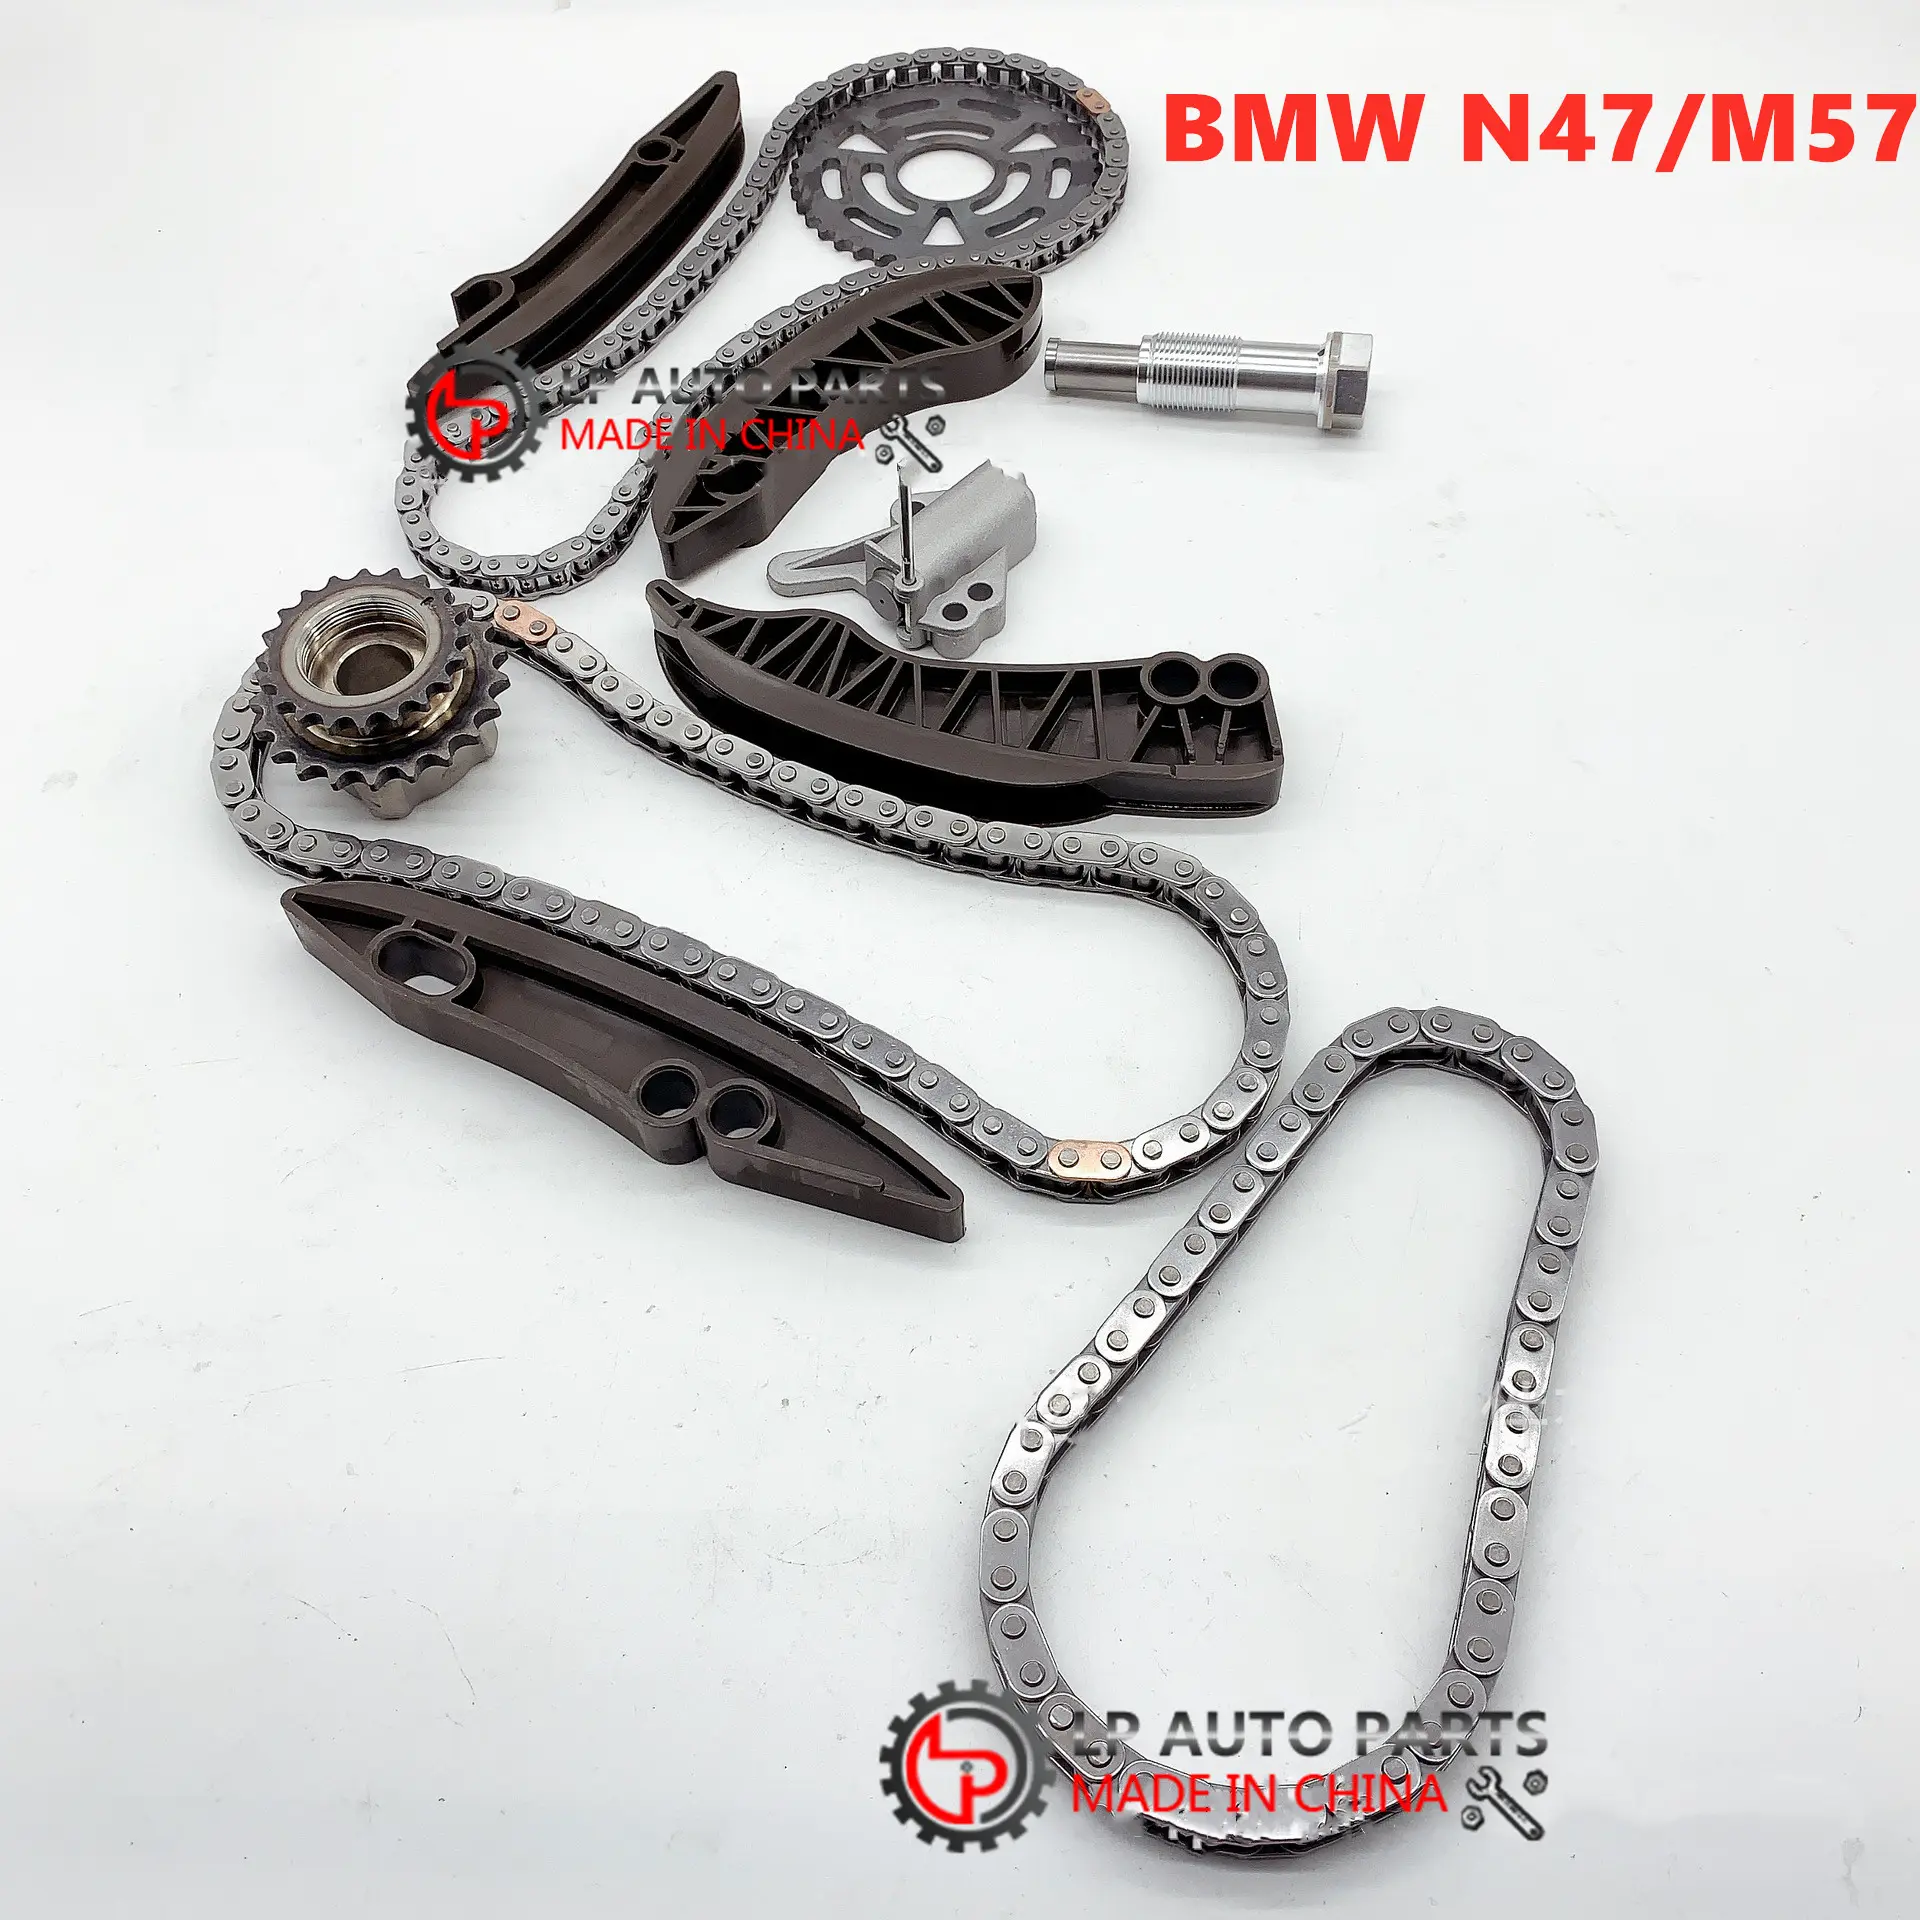 M57 N47 D20 dizel motor zamanlama zinciri kiti BMW F10 F11 520D 320D E90 E91 E92 E93 Mini Cooper R56 R61